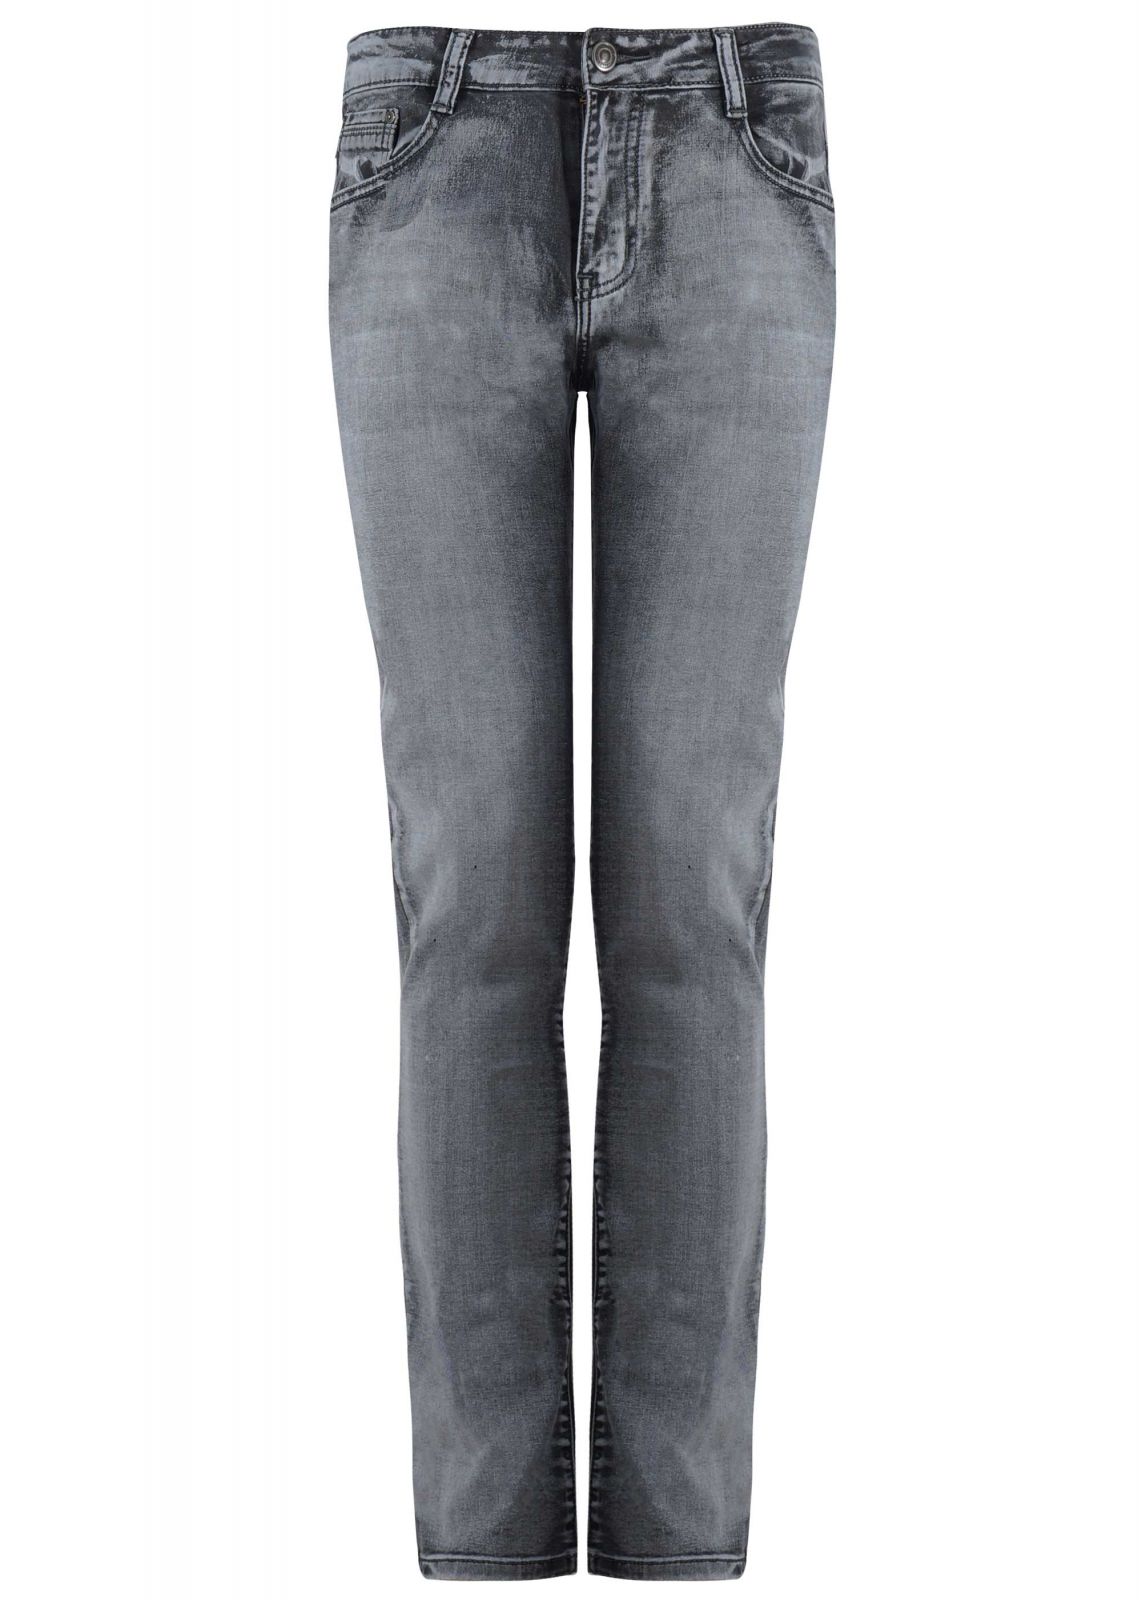 Ανδρικό παντελόνι ελαστικό jean ξεβάμματα ίσια γραμμή . Denim Collection